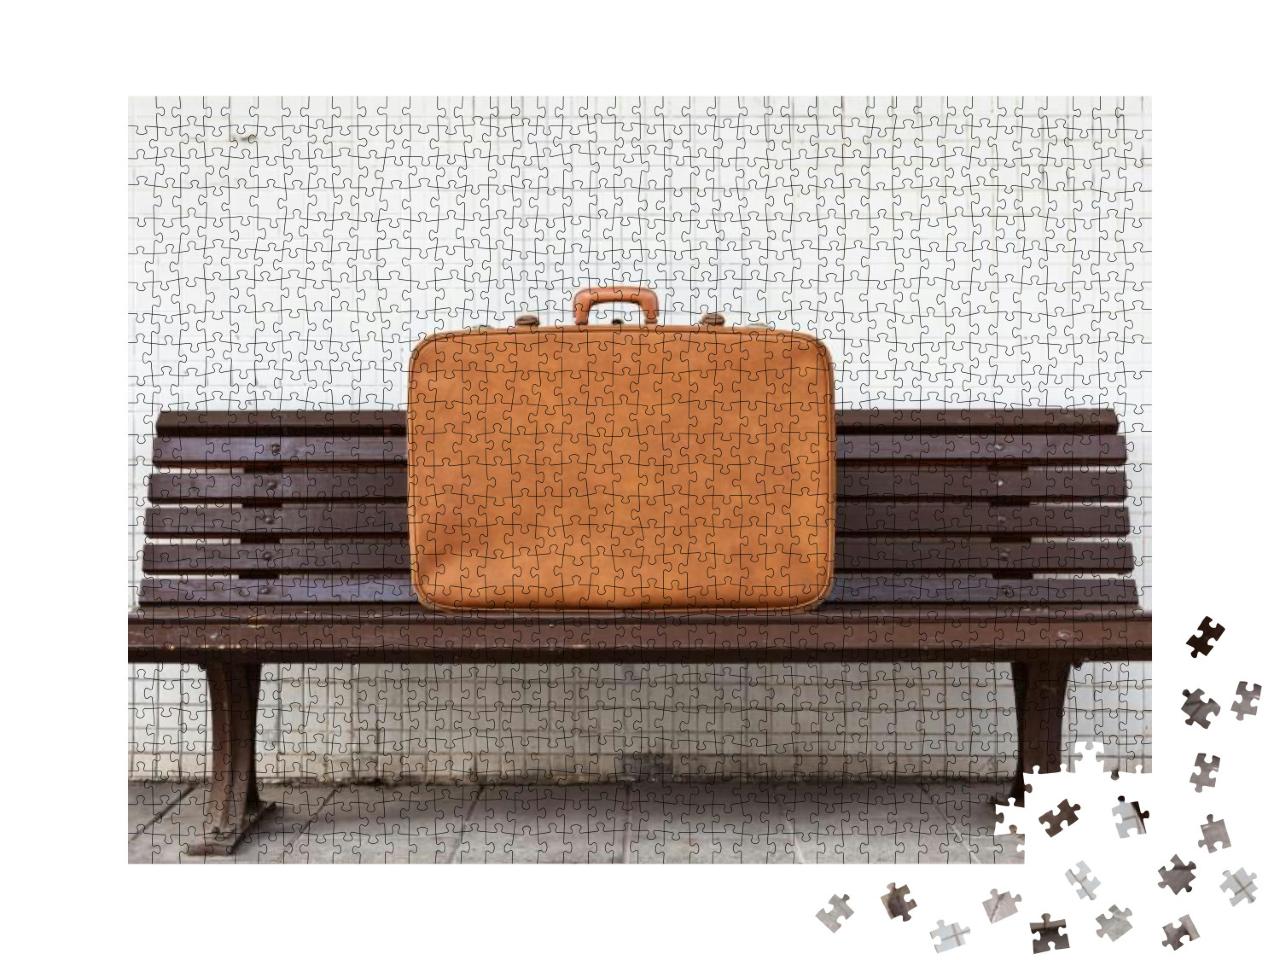 Puzzle 1000 Teile „Vintage-Koffer auf einer Bank“